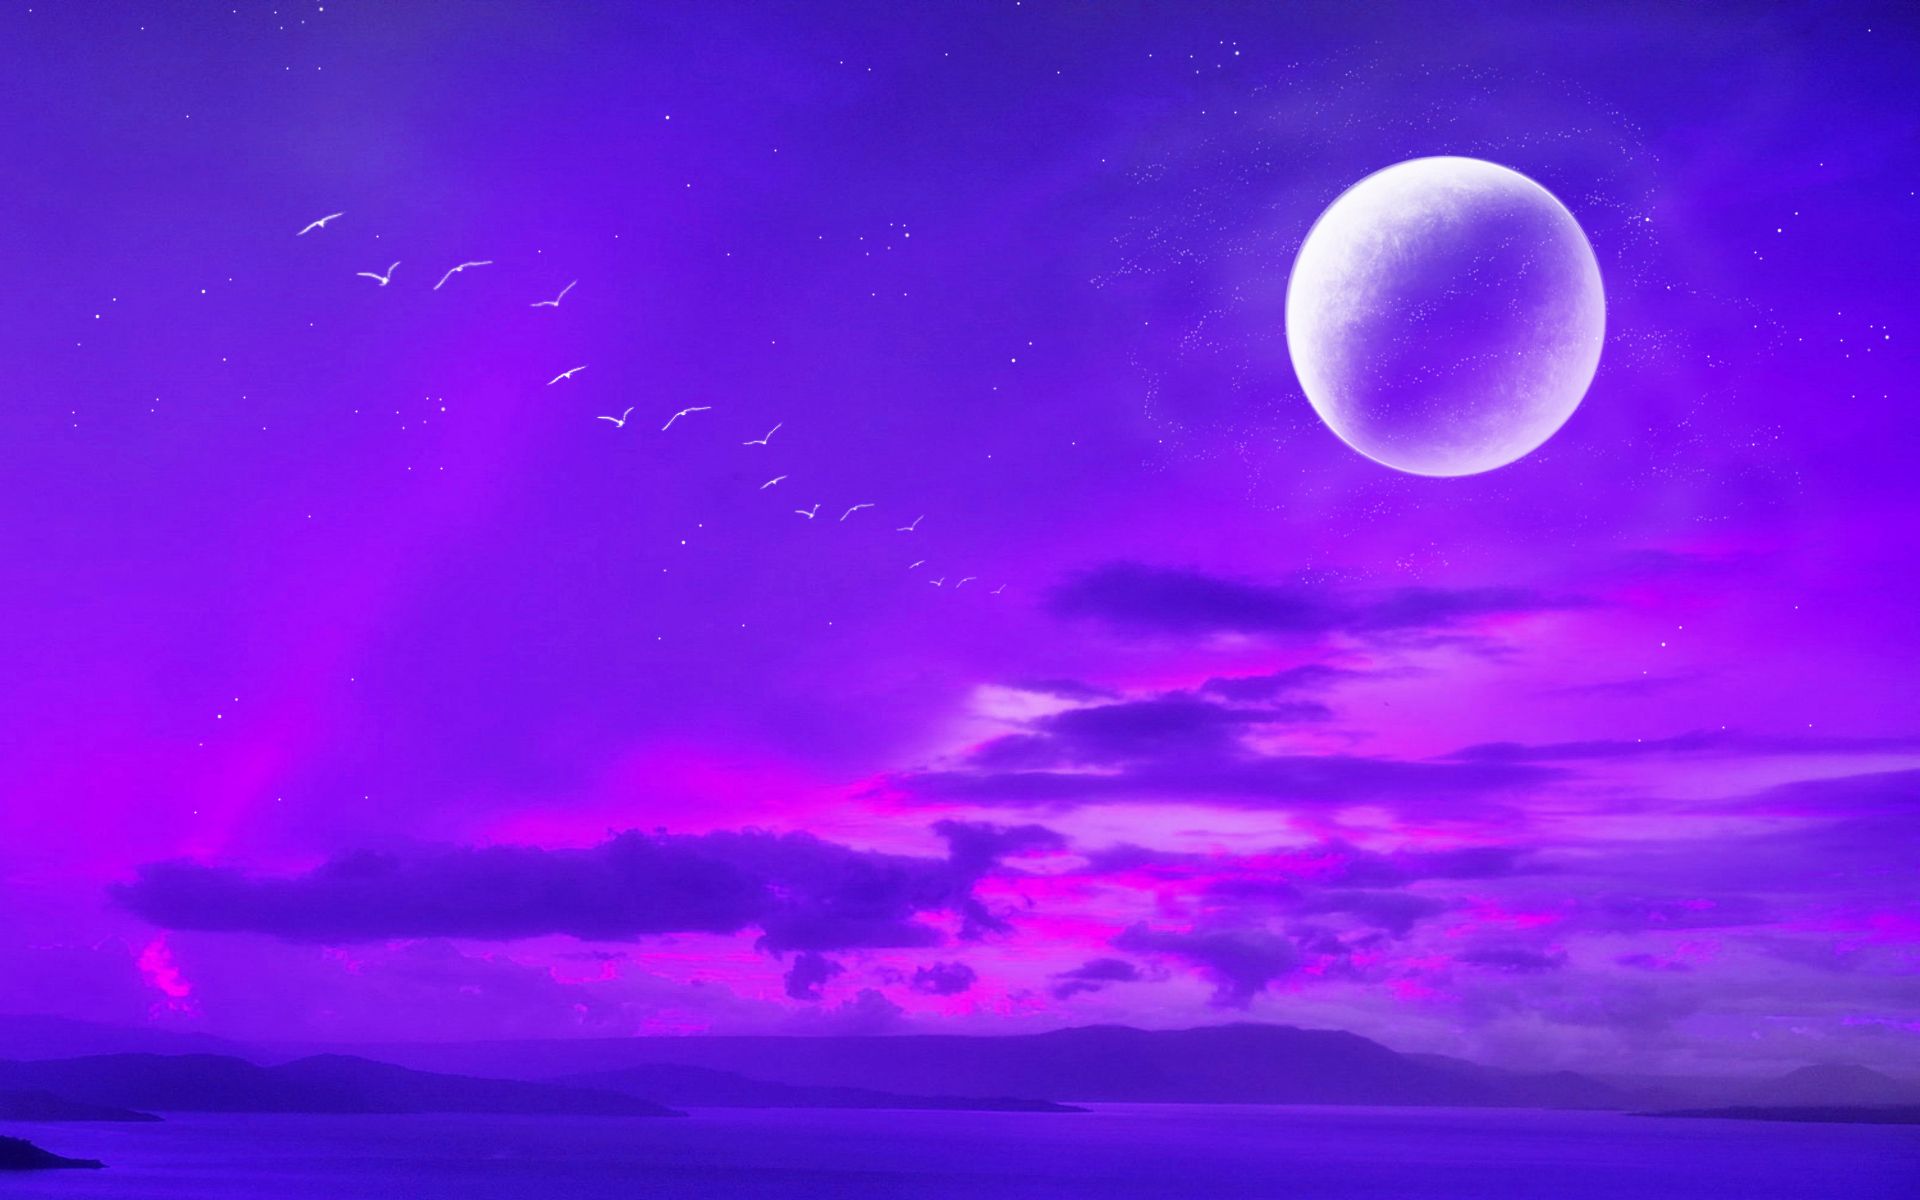 Tận hưởng vẻ đẹp hoang sơ của núi rừng kết hợp với hình nền tím nhạt độc đáo của Purple Moon And Mountain Wallpapers chắc chắn sẽ làm bạn cảm thấy thư giãn và bình yên. Hãy trang trí thiết bị của mình bằng những hình ảnh hoang sơ này để thực sự tận hưởng cuộc sống.